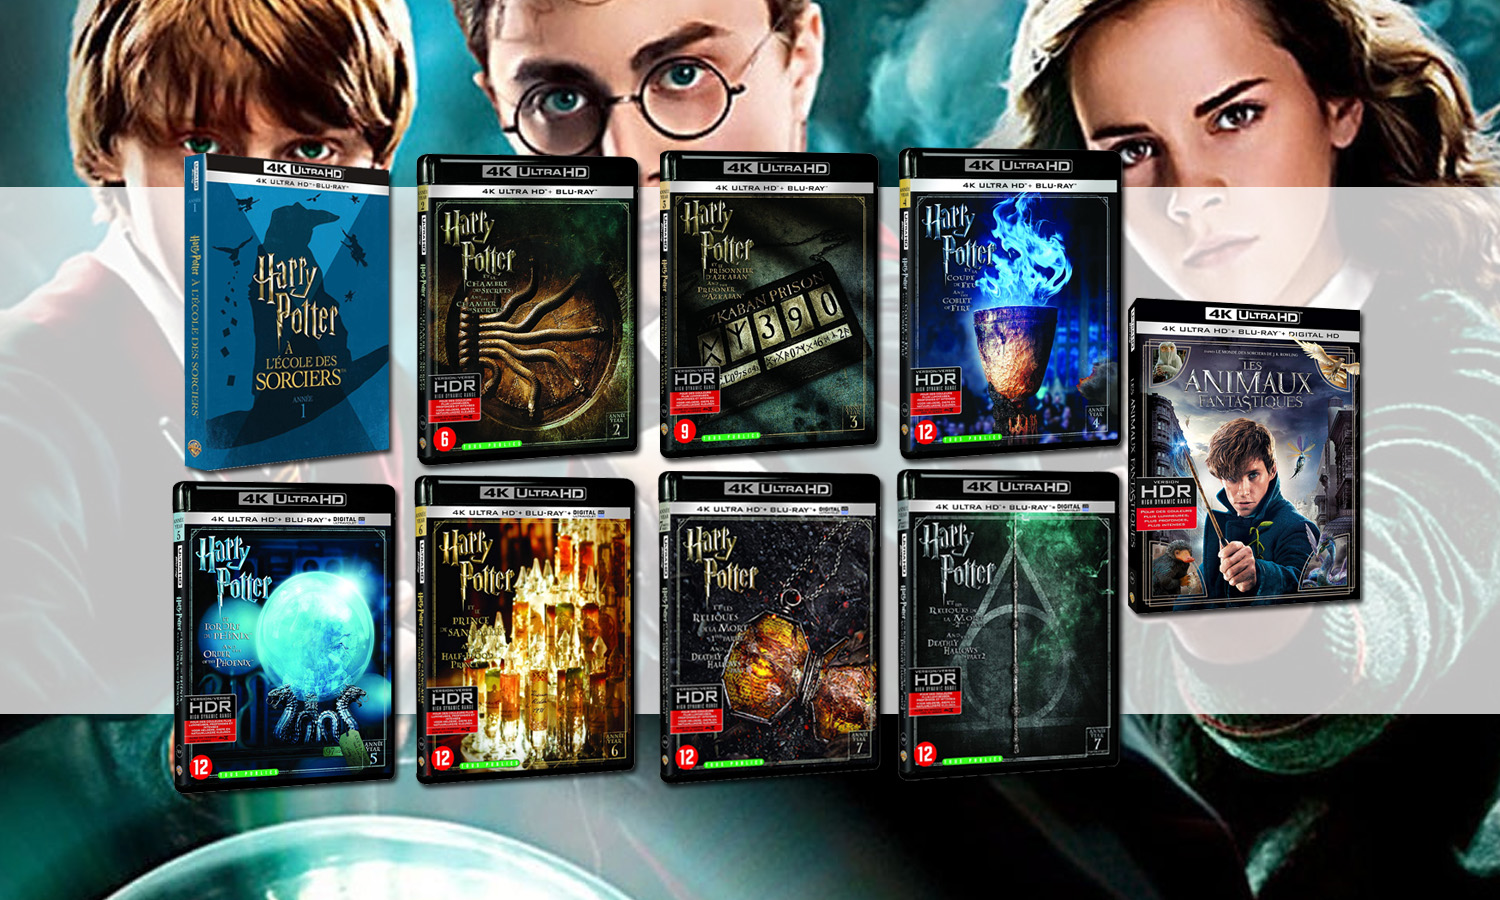 Harry Potter Blu Ray 4K pas cher : les offres